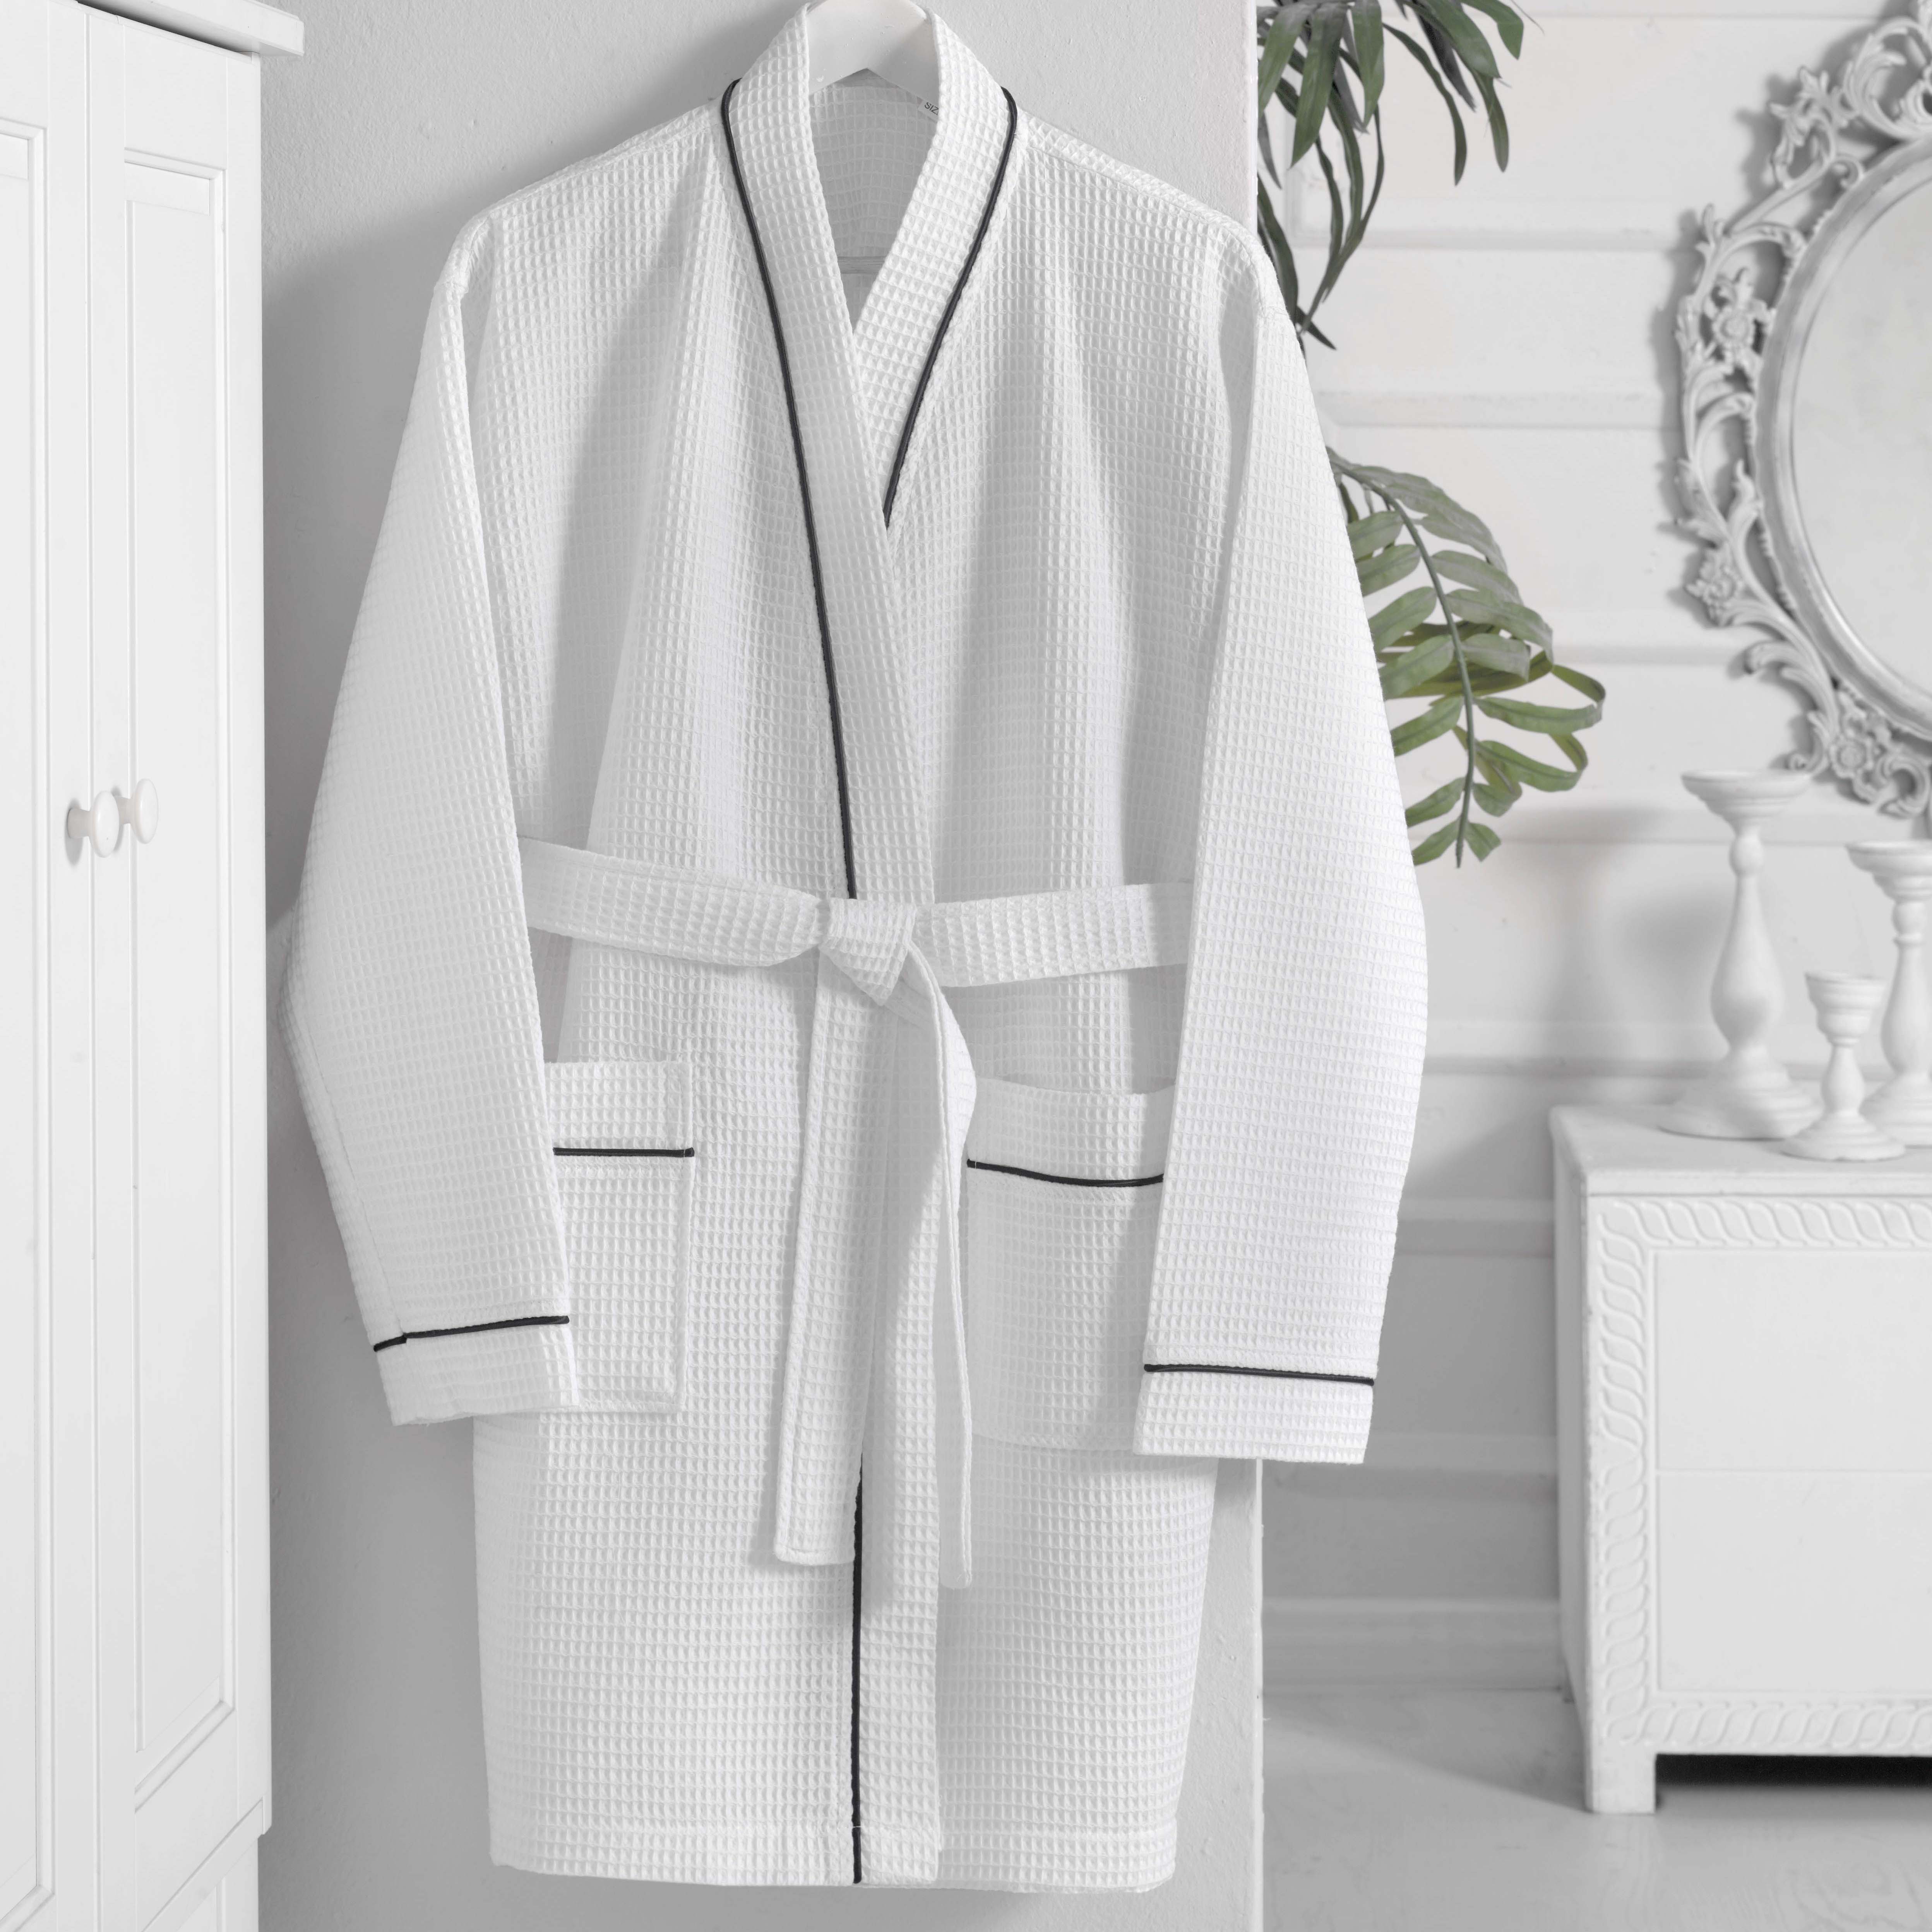 Áo choàng tắm chất liệu cotton,  màu trắng, kích thước 115 cm (Tính từ vai trở xuống), trọng lượng: 700 gr